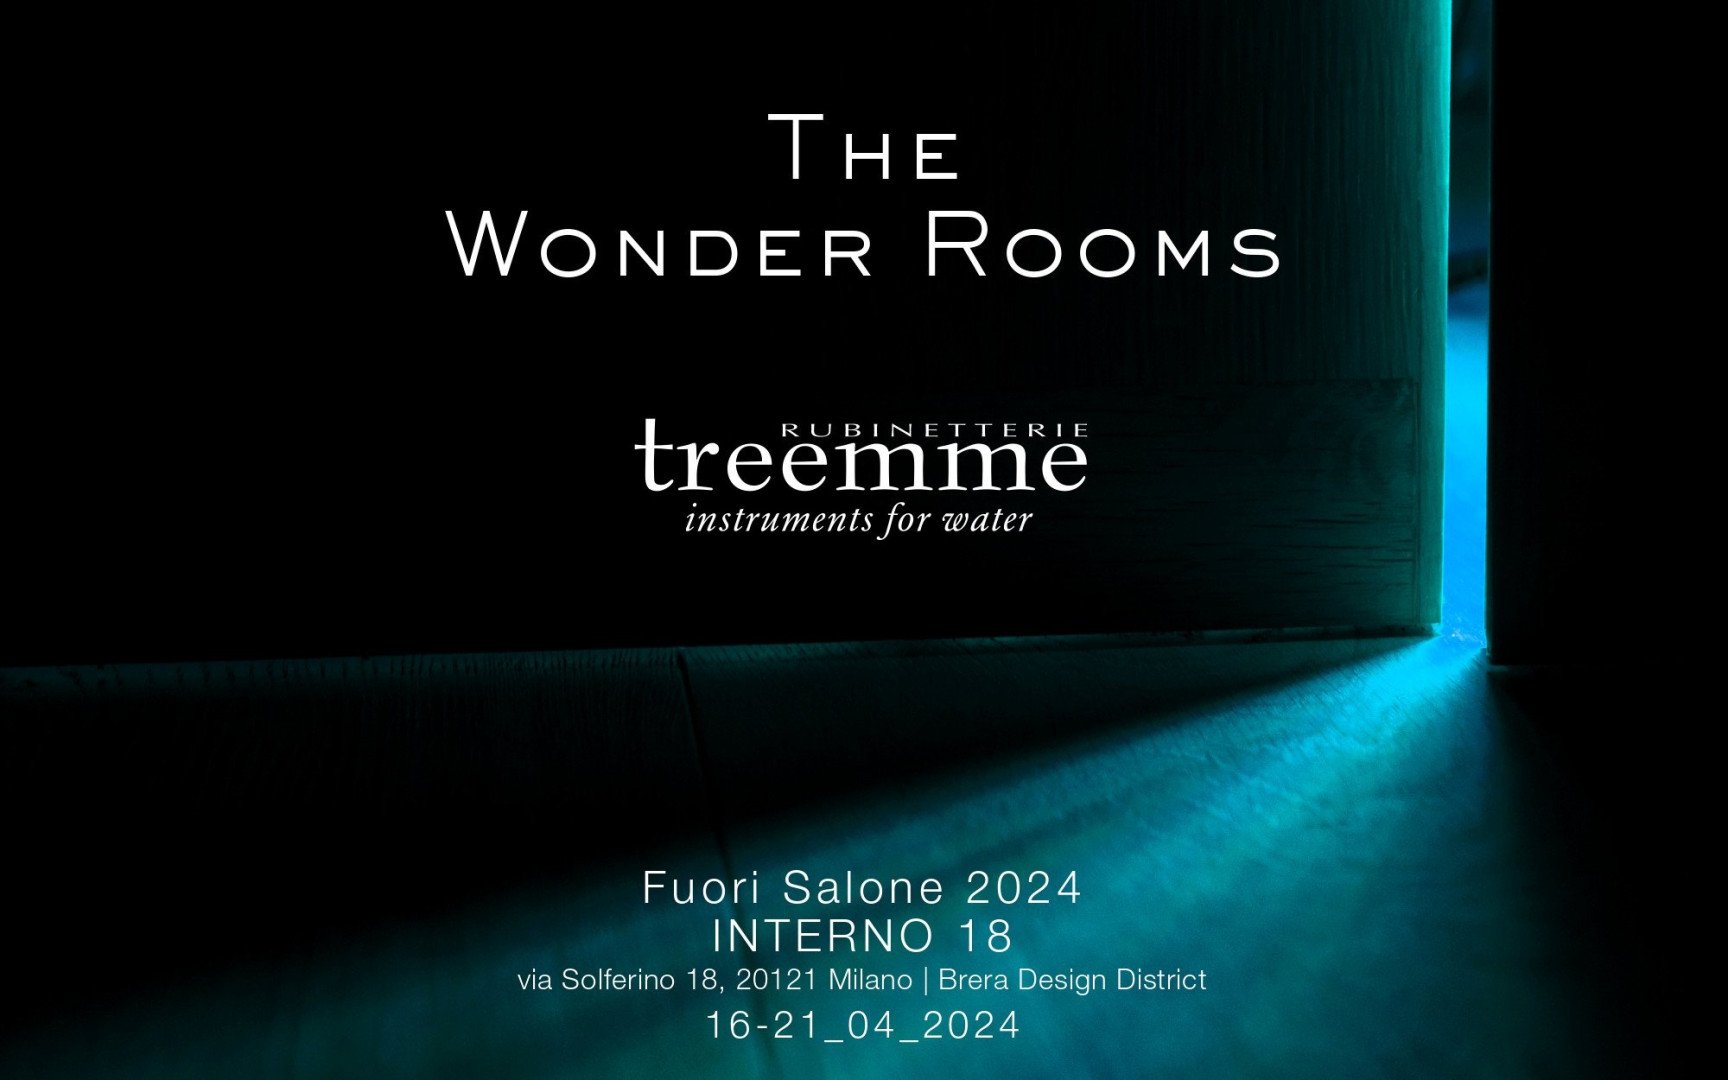 The Wonder Rooms: la participación de Rubinetterie Treemme en la Milano Design Week 2024